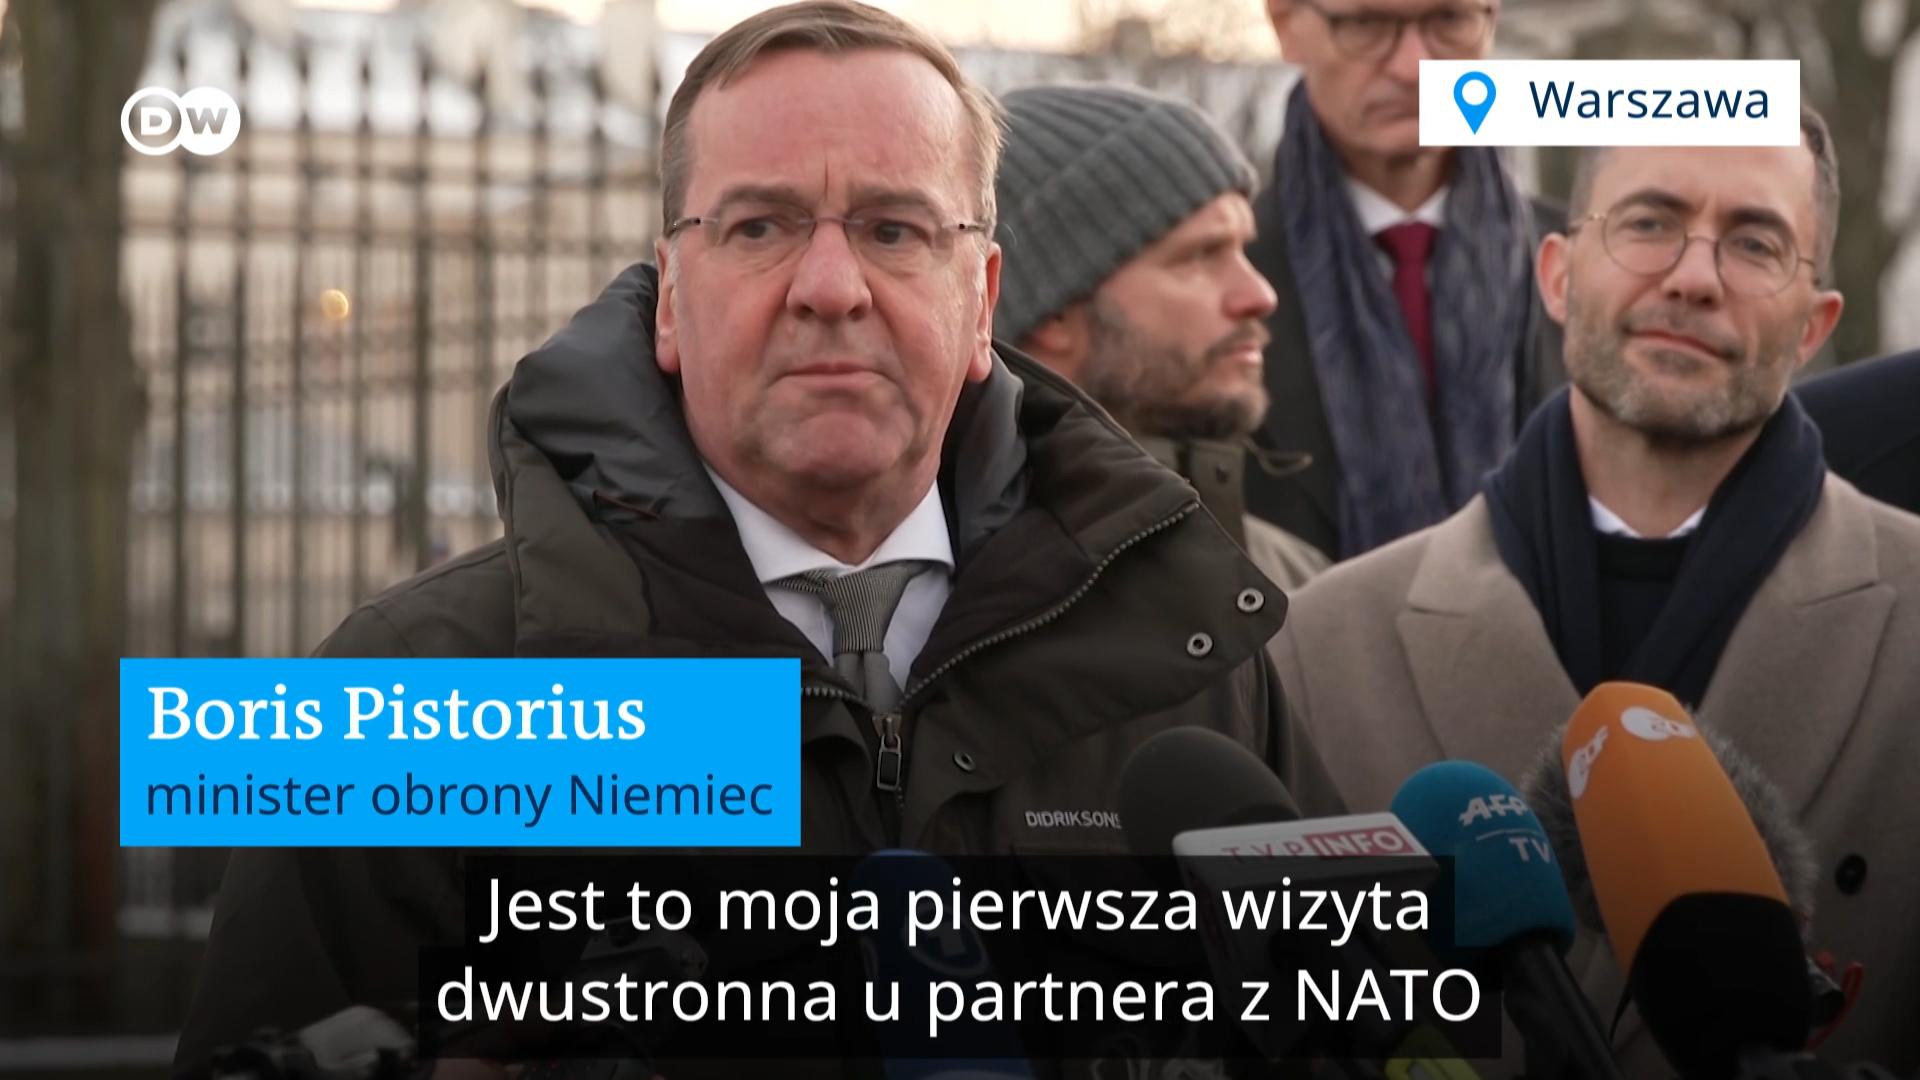 Niemcy i Polska chcą mobilizować europejskie kraje NATO ws. Ukrainy. Minister mówi w Warszawie o „wspólnocie interesów”.